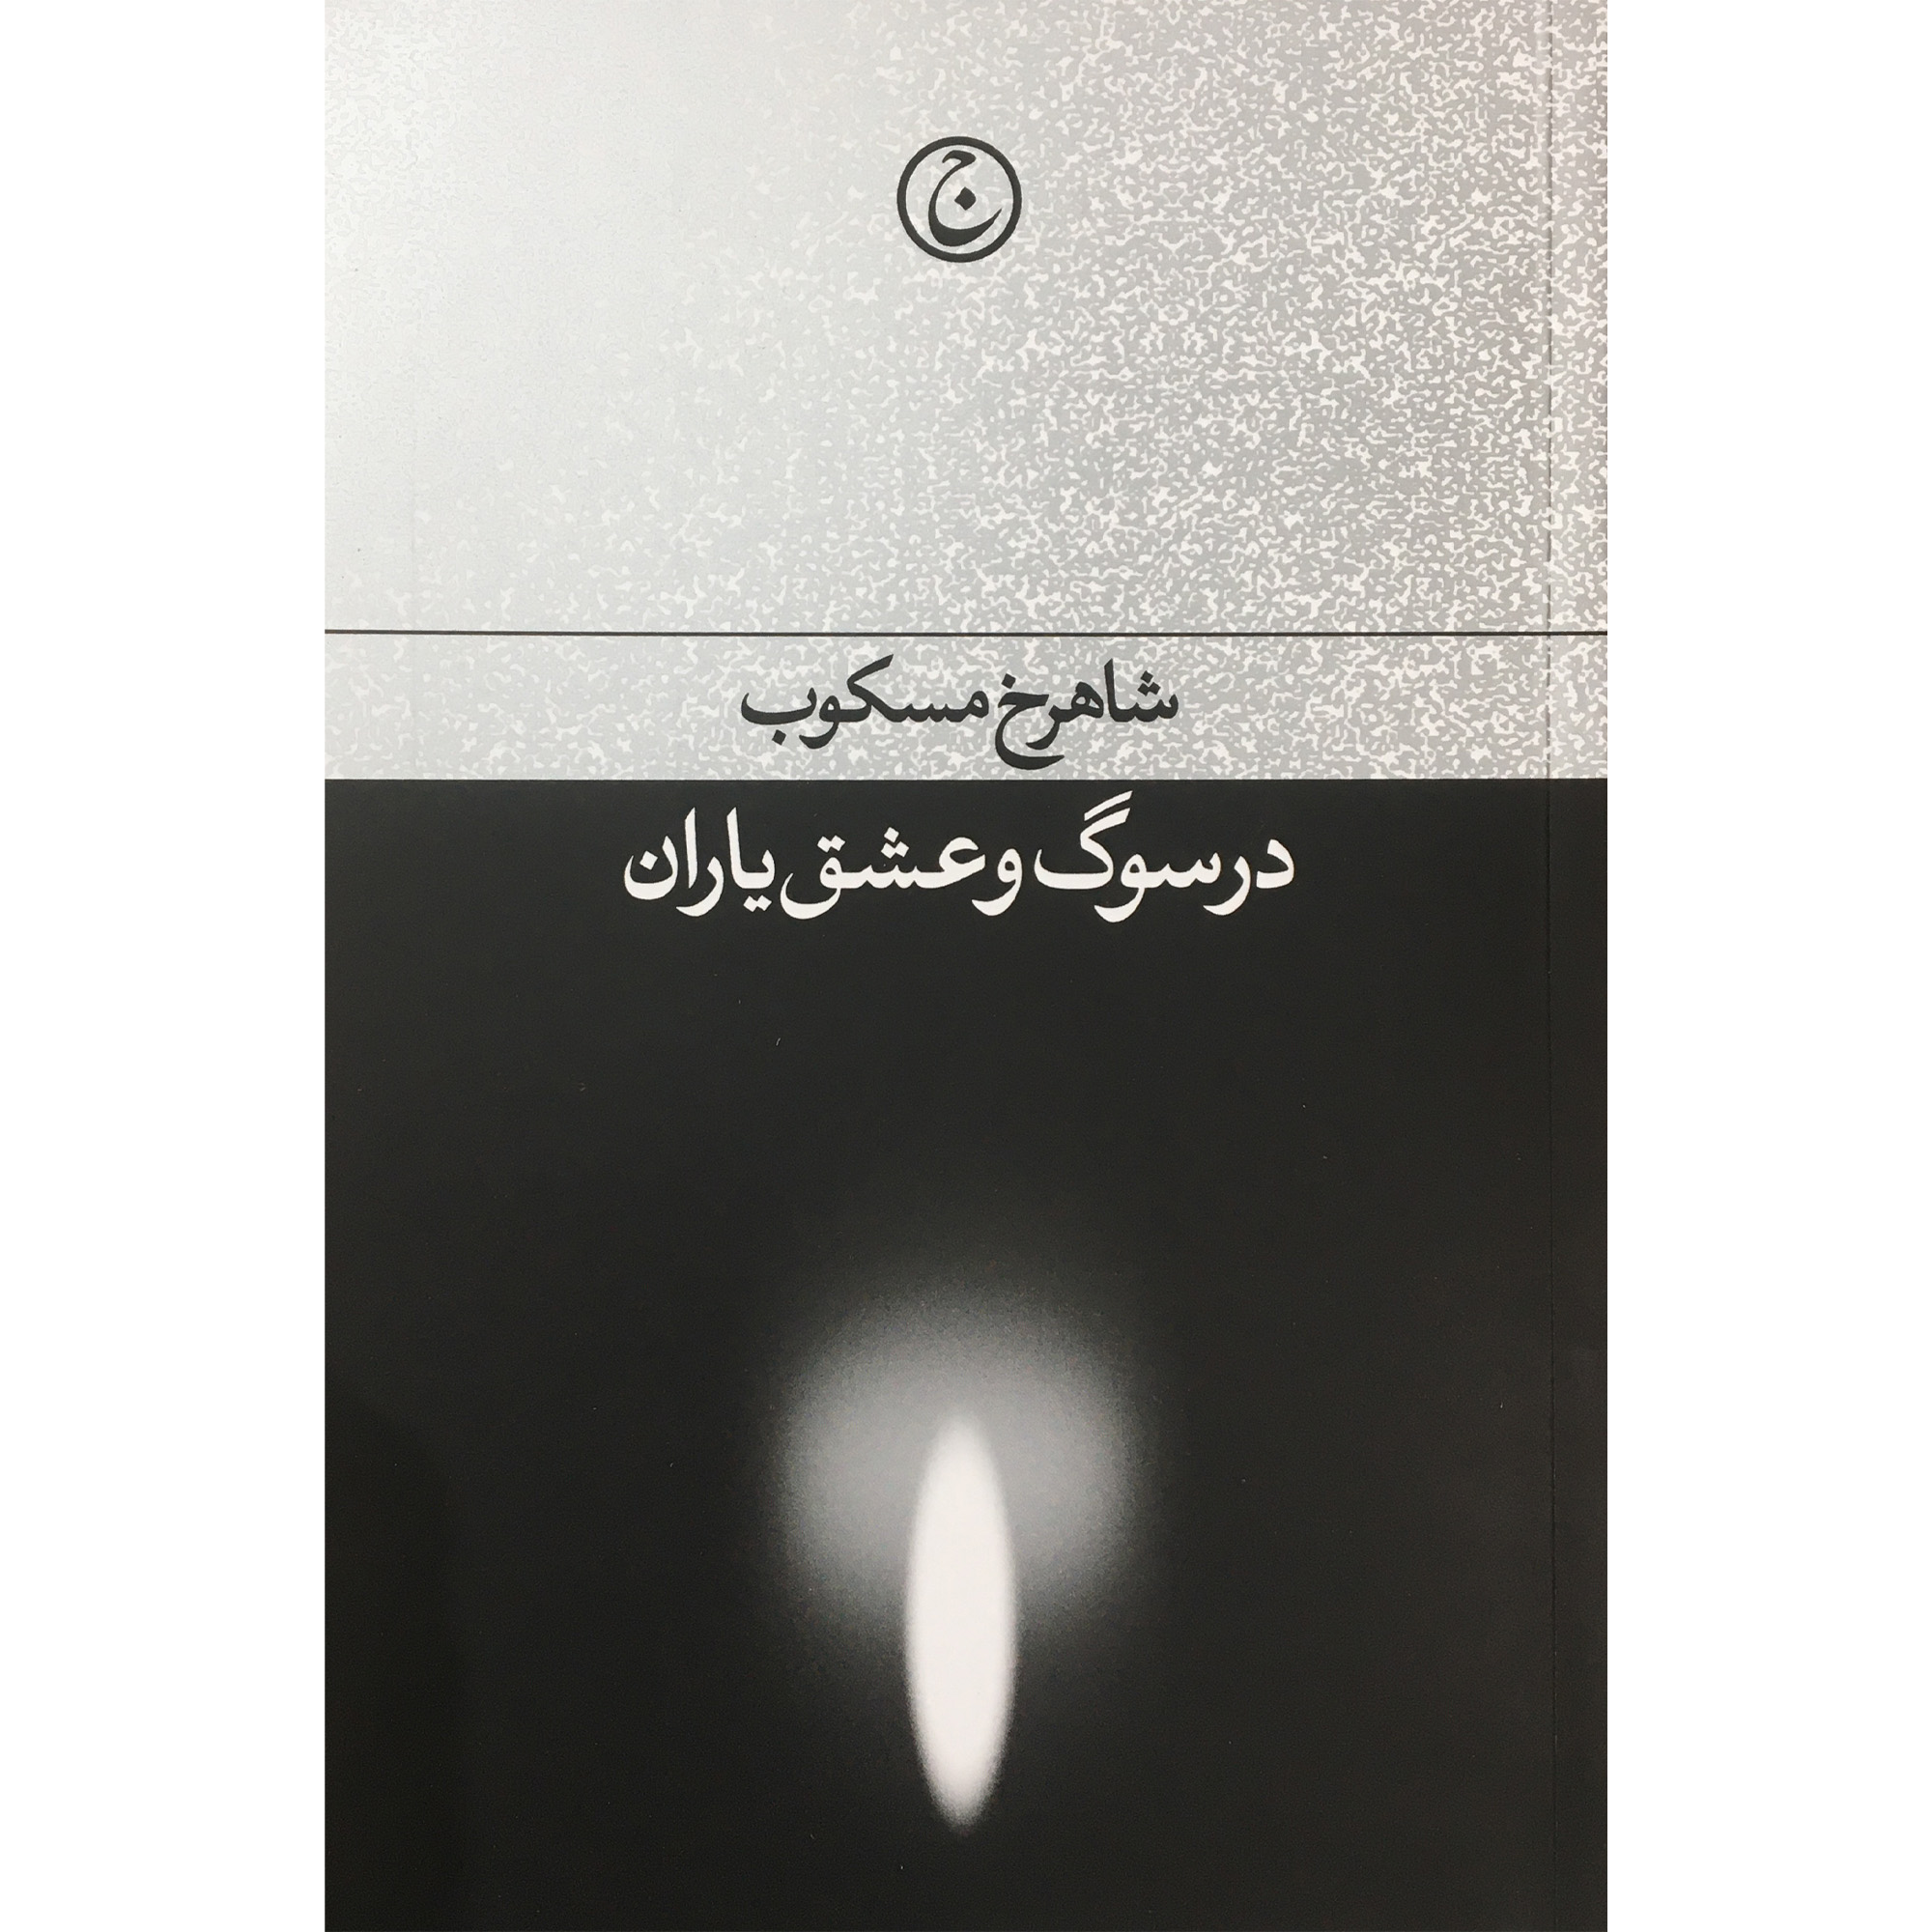 کتاب در سوگ و عشق ياران اثر شاهرخ مسكوب انتشارات فرهنگ جاويد